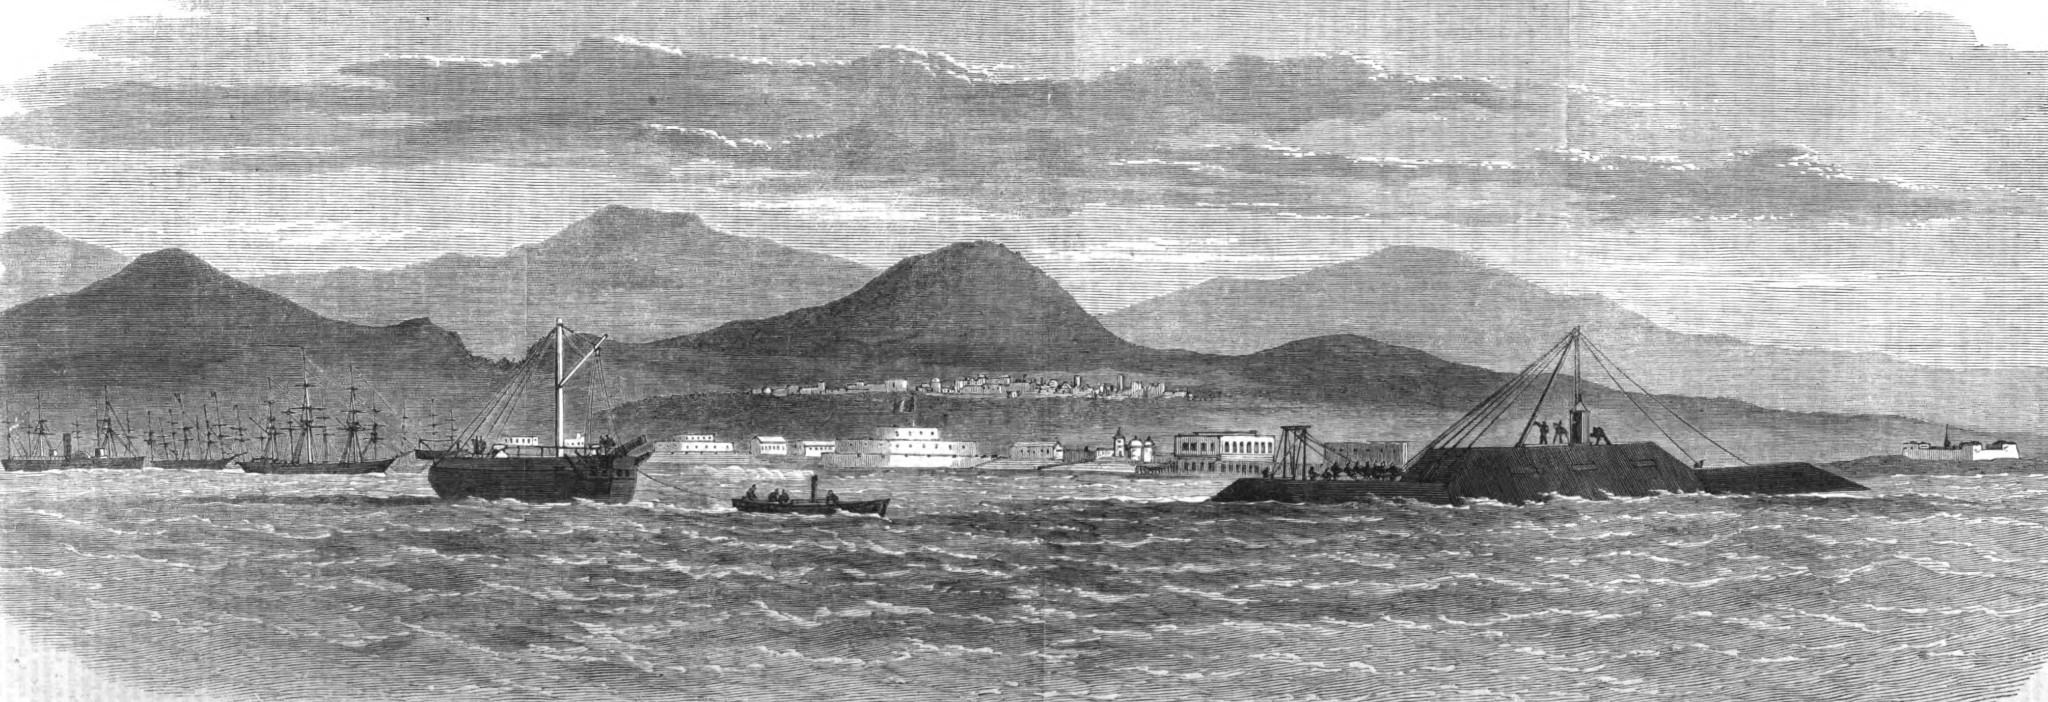 W lutym 1866 pancernik osiadł na mieliźnie koło Callao. Na rycinie przedstawiono prace ratownicze, przy jego ściąganiu z tejże mielizny.